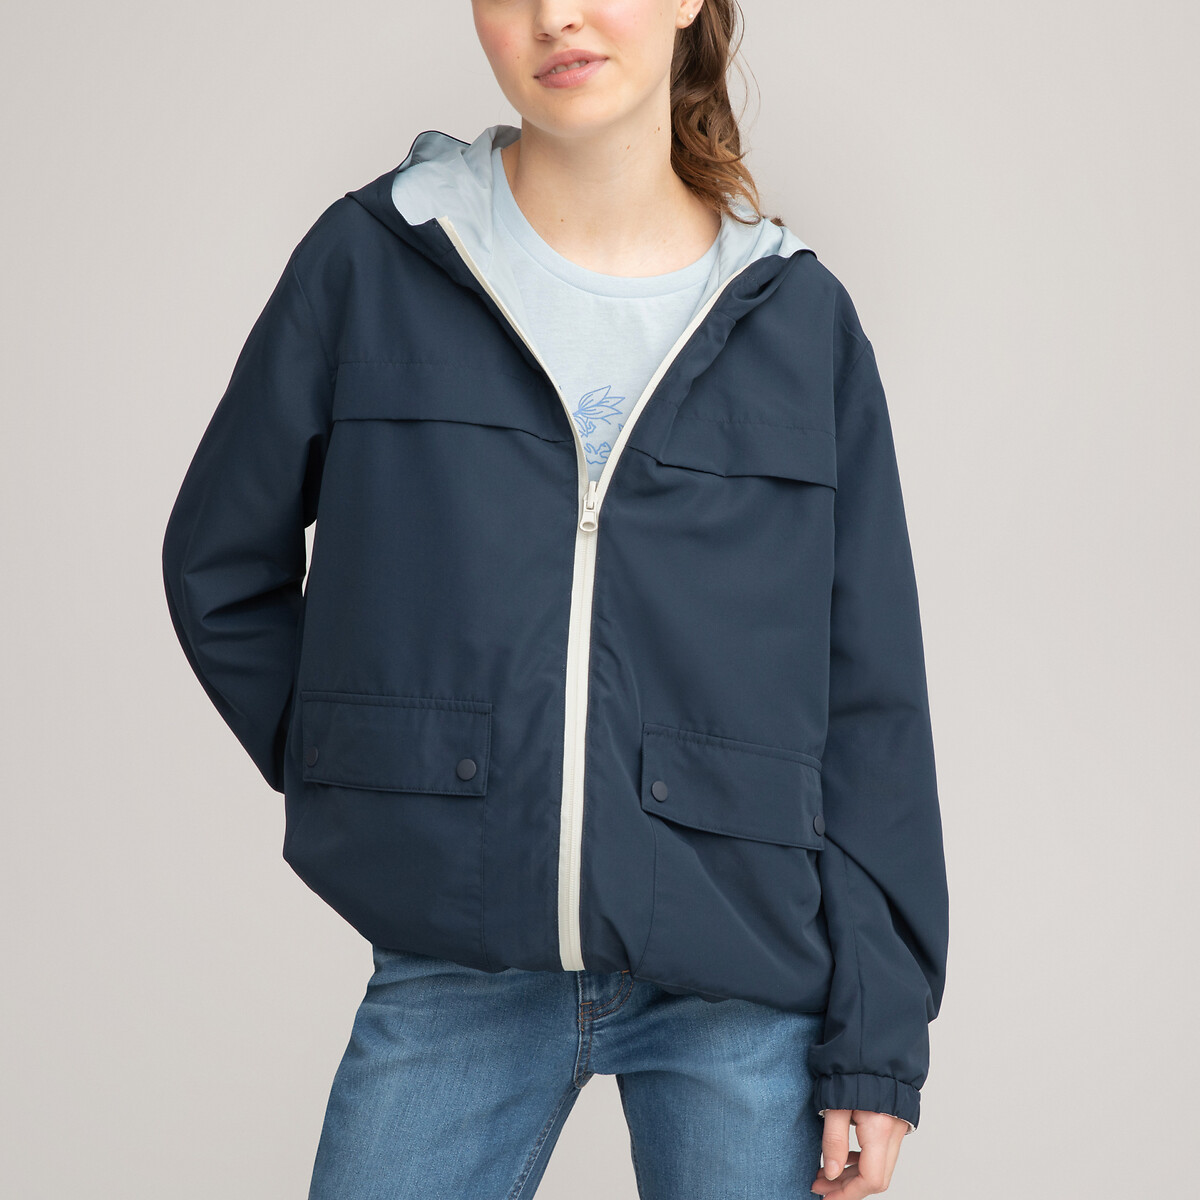 Куртка LA REDOUTE COLLECTIONS С капюшоном двухсторонняя 10-18 лет 18 лет - 168 см бежевый, размер 18 лет - 168 см